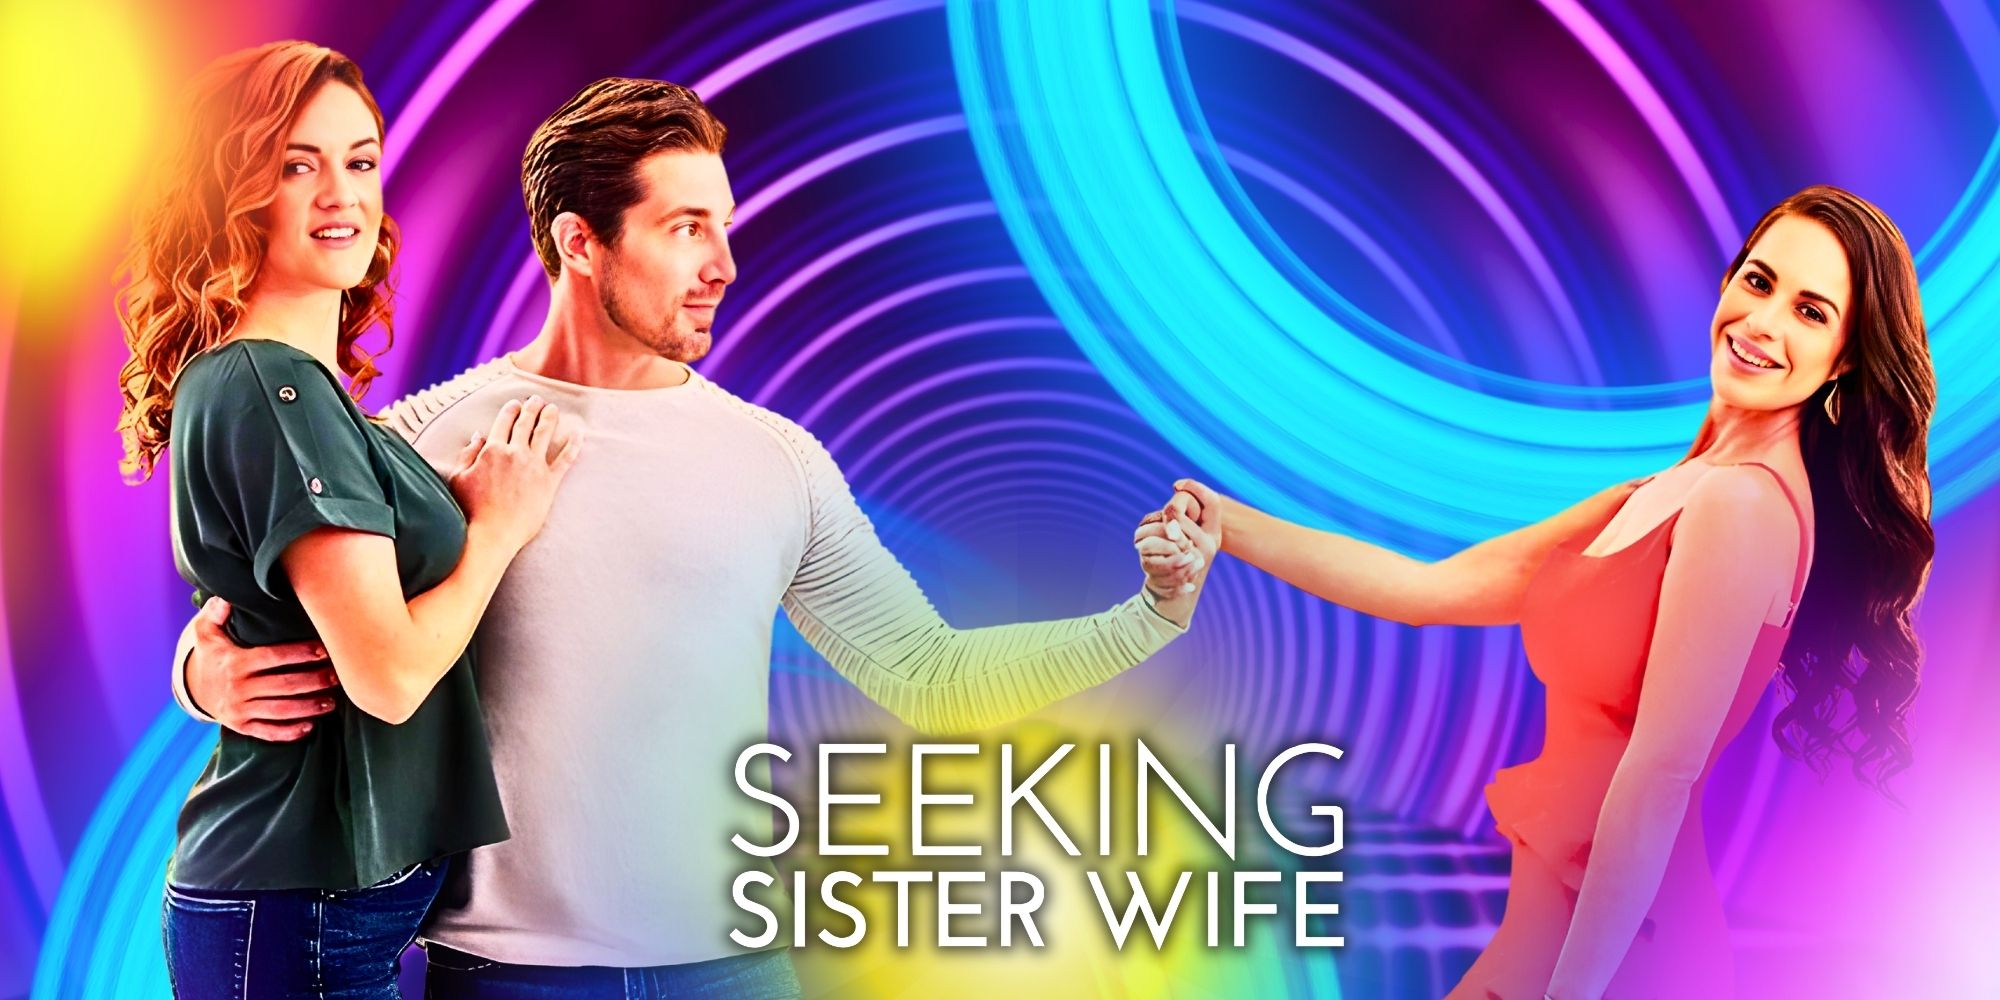 Buscando hermana esposa temporada 5: ¿Cuándo es el final y cuántos episodios quedan?